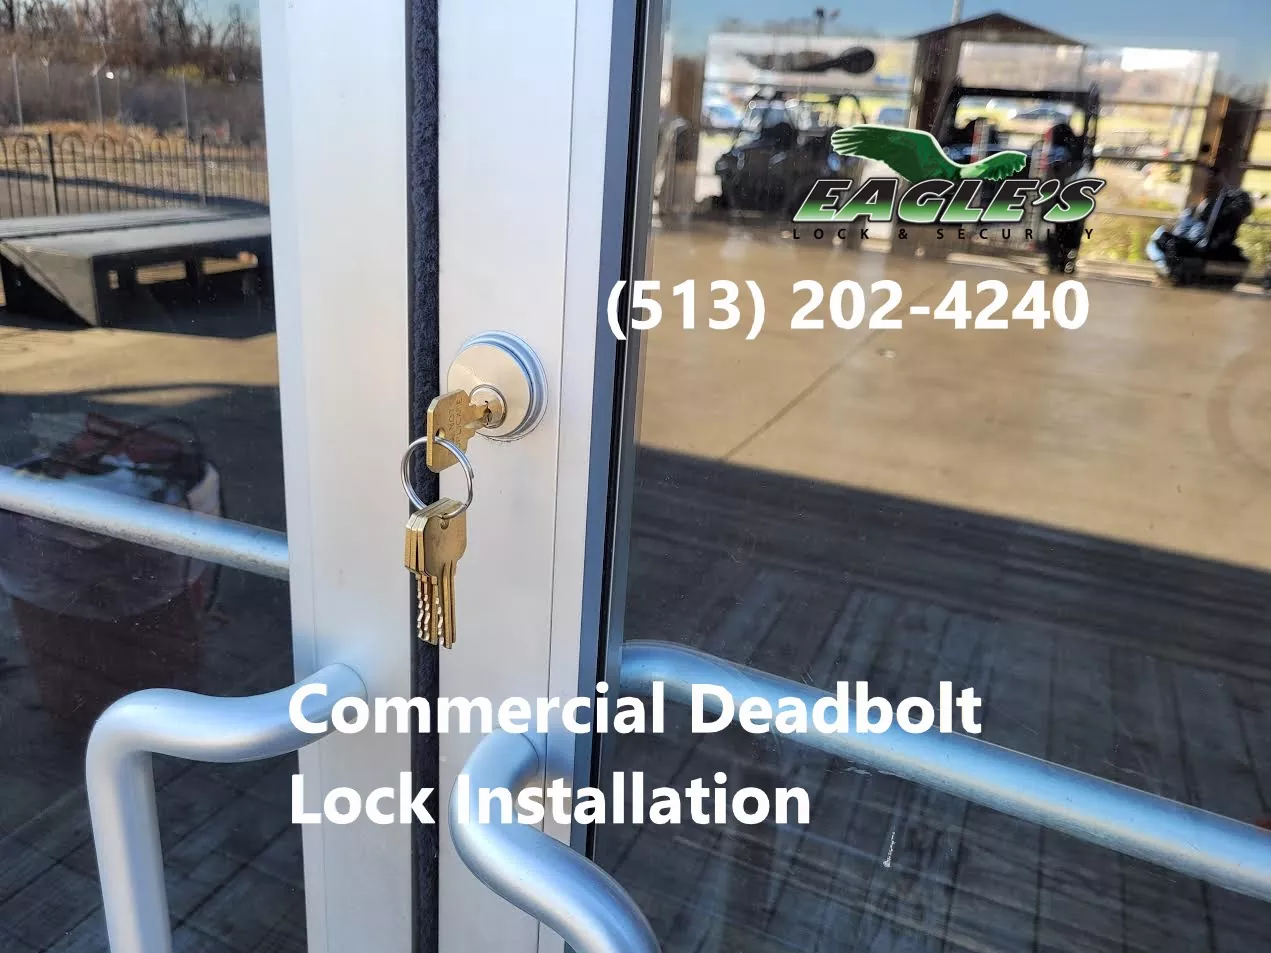 Commercial Deadbolt Lock Installation Service